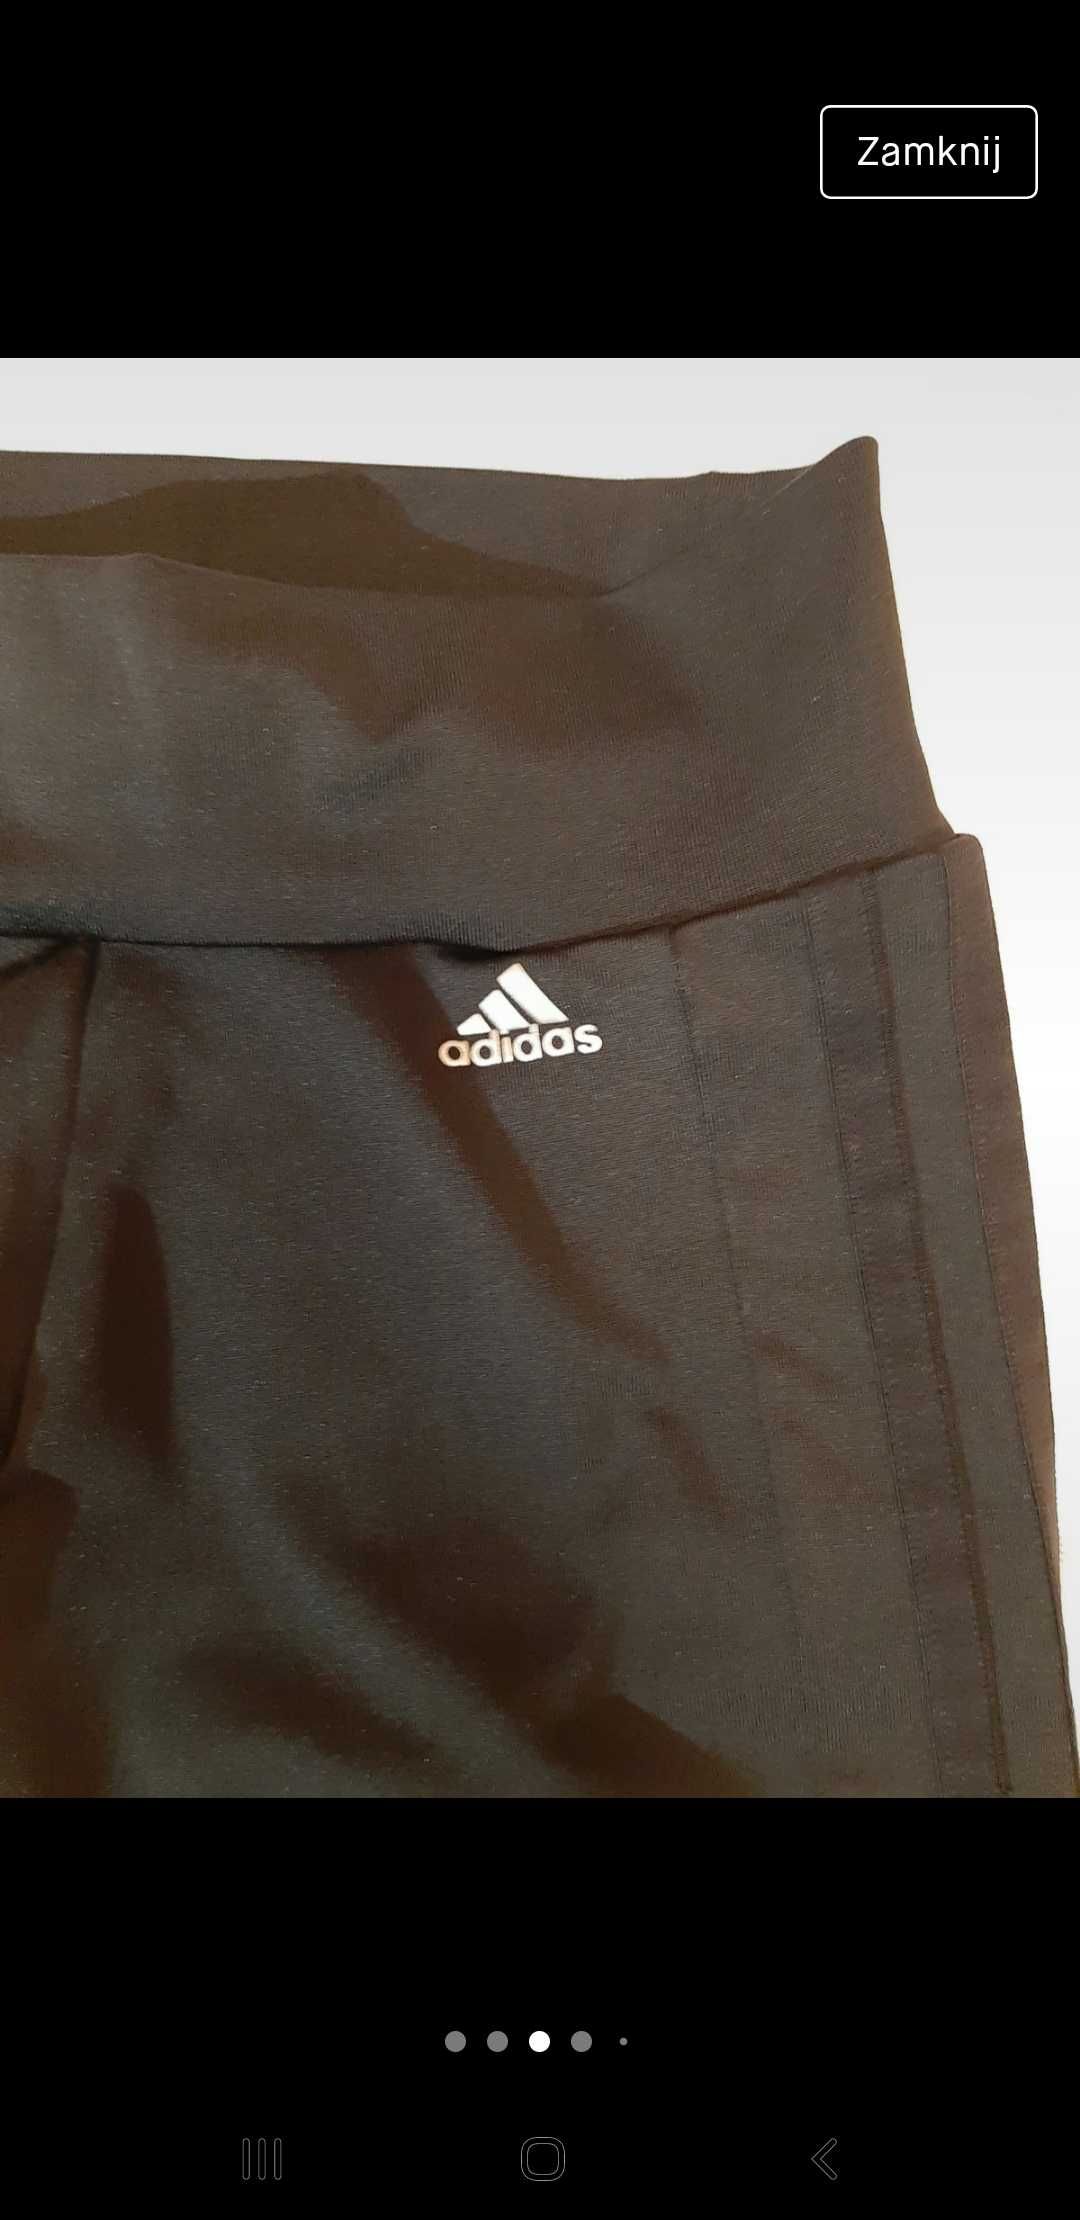 Adidas - XS spodnie na trening 3/4